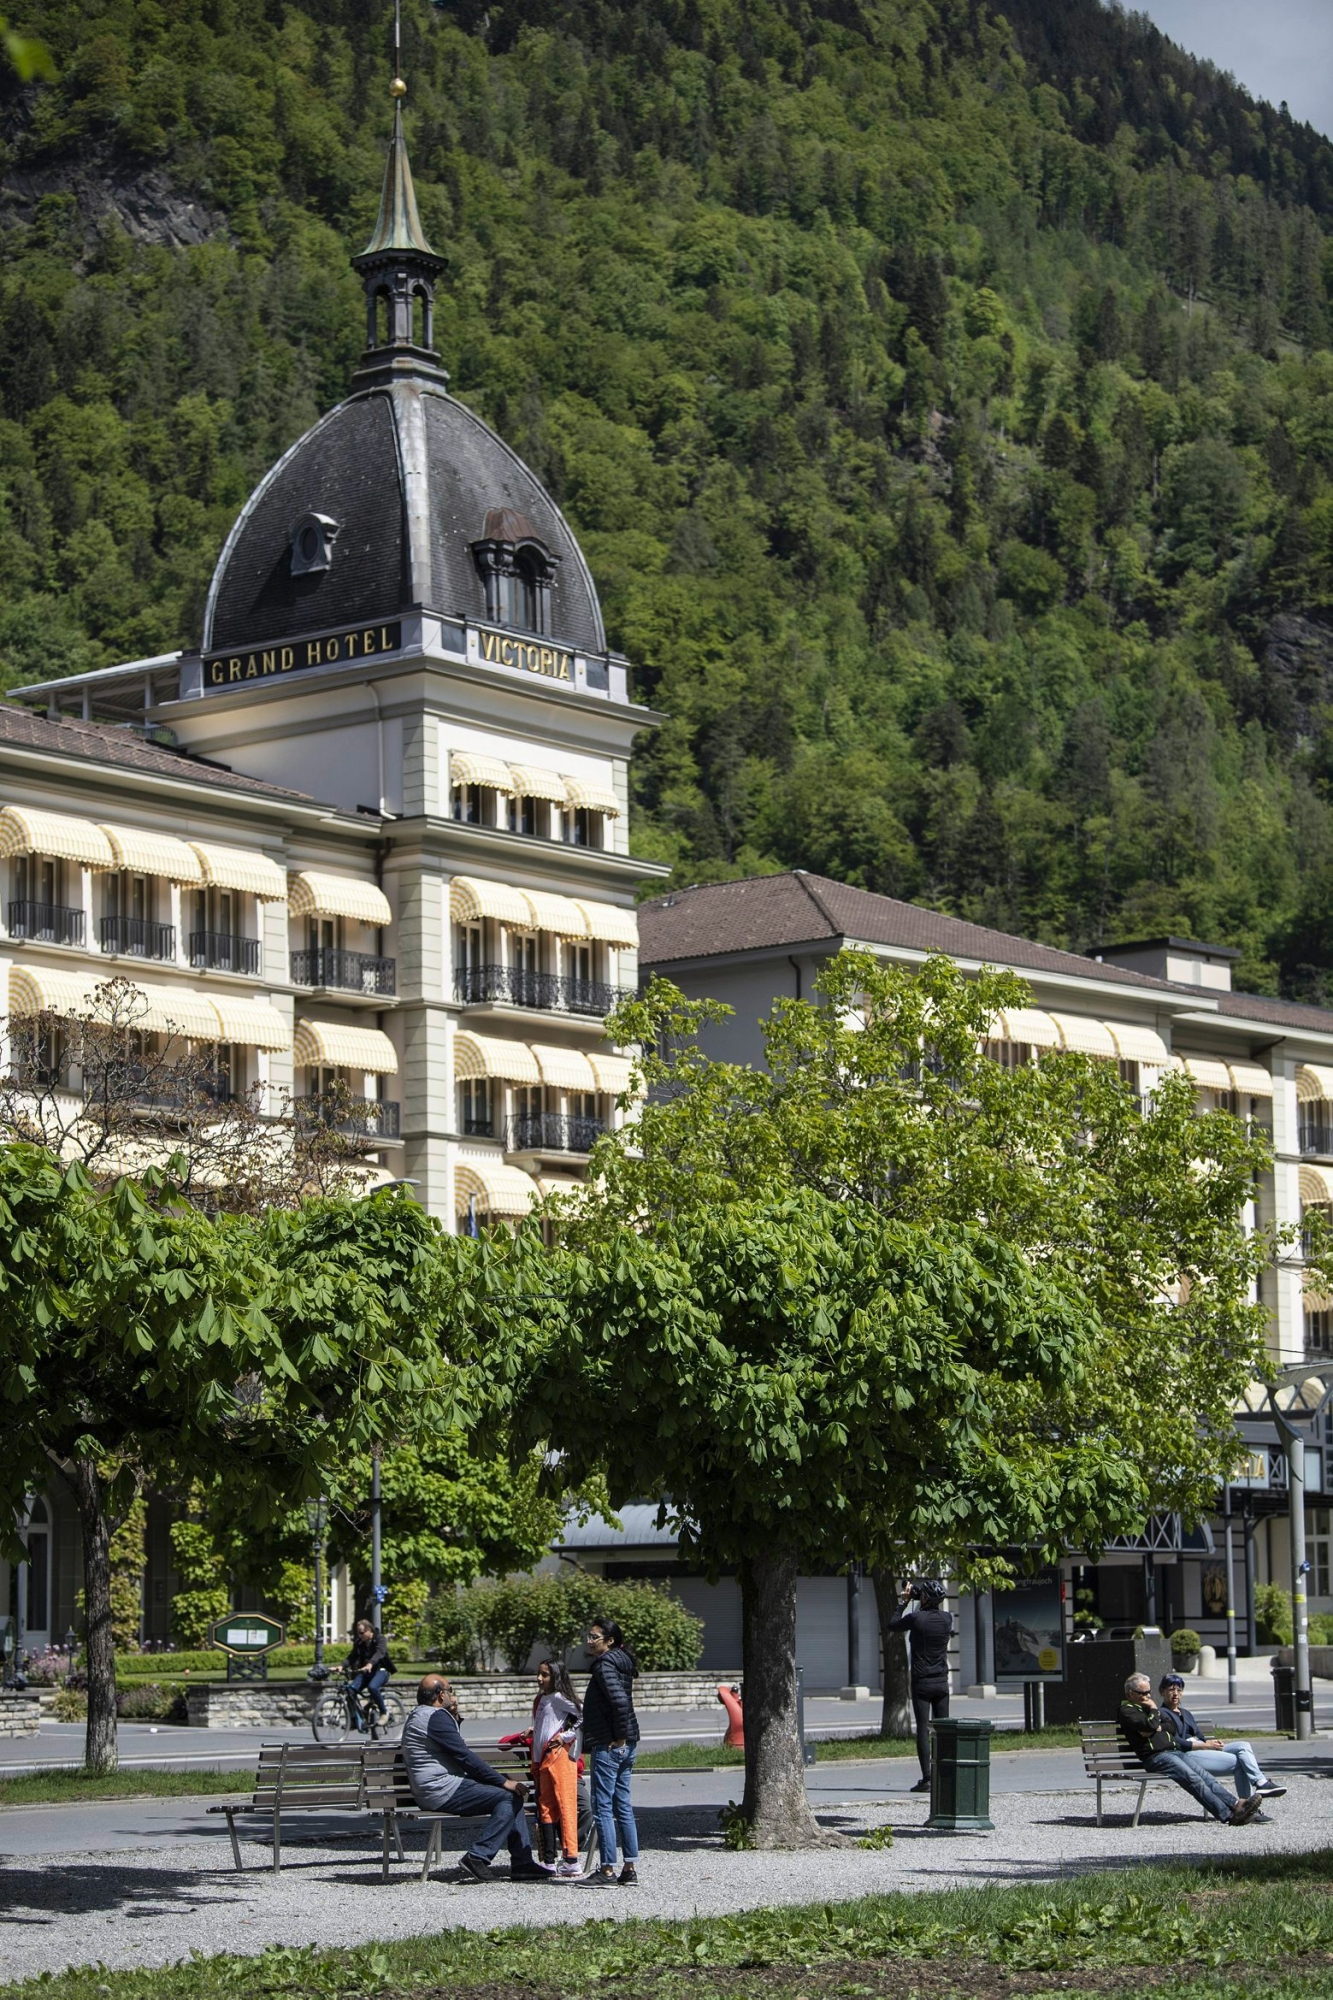 Ce ne sont ni les entreprises ni les ménages qui vont financer, seuls, la reprise espérée de l’économie - mise à mal par le coronavirus, à l’image de l’hôtellerie (ici le Grand Hôtel Victoria, à Interlaken).